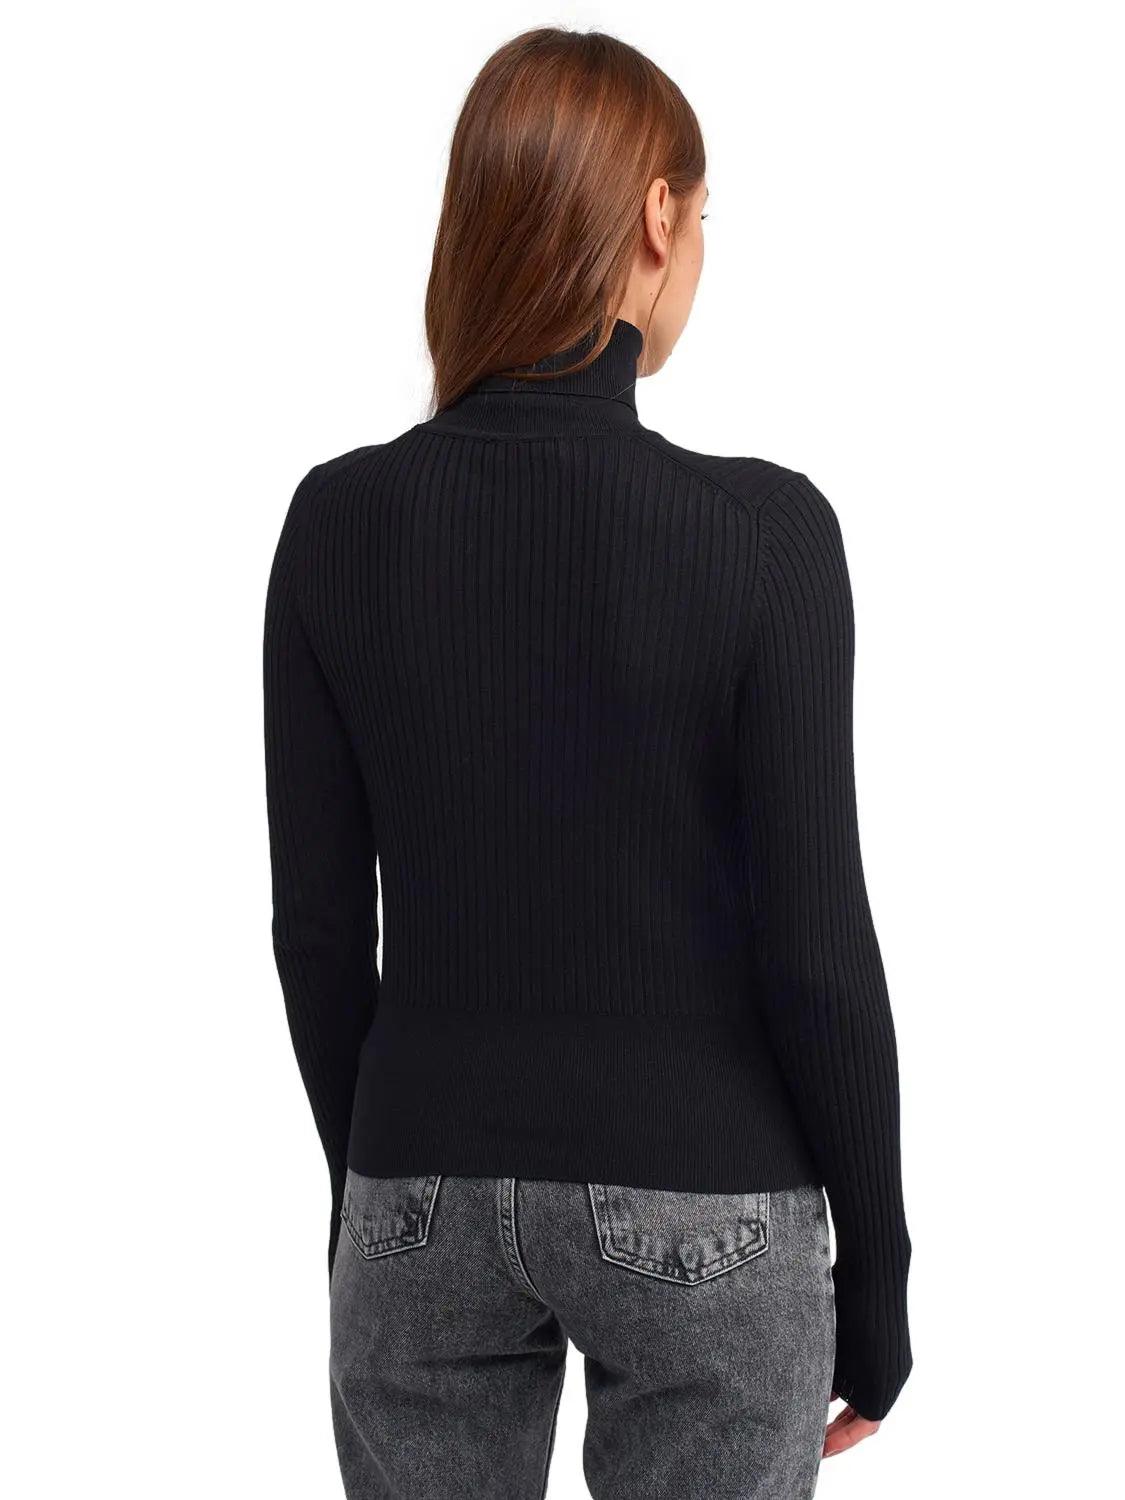 Turtleneck Basic Pullover Black / One Size ZEFASH